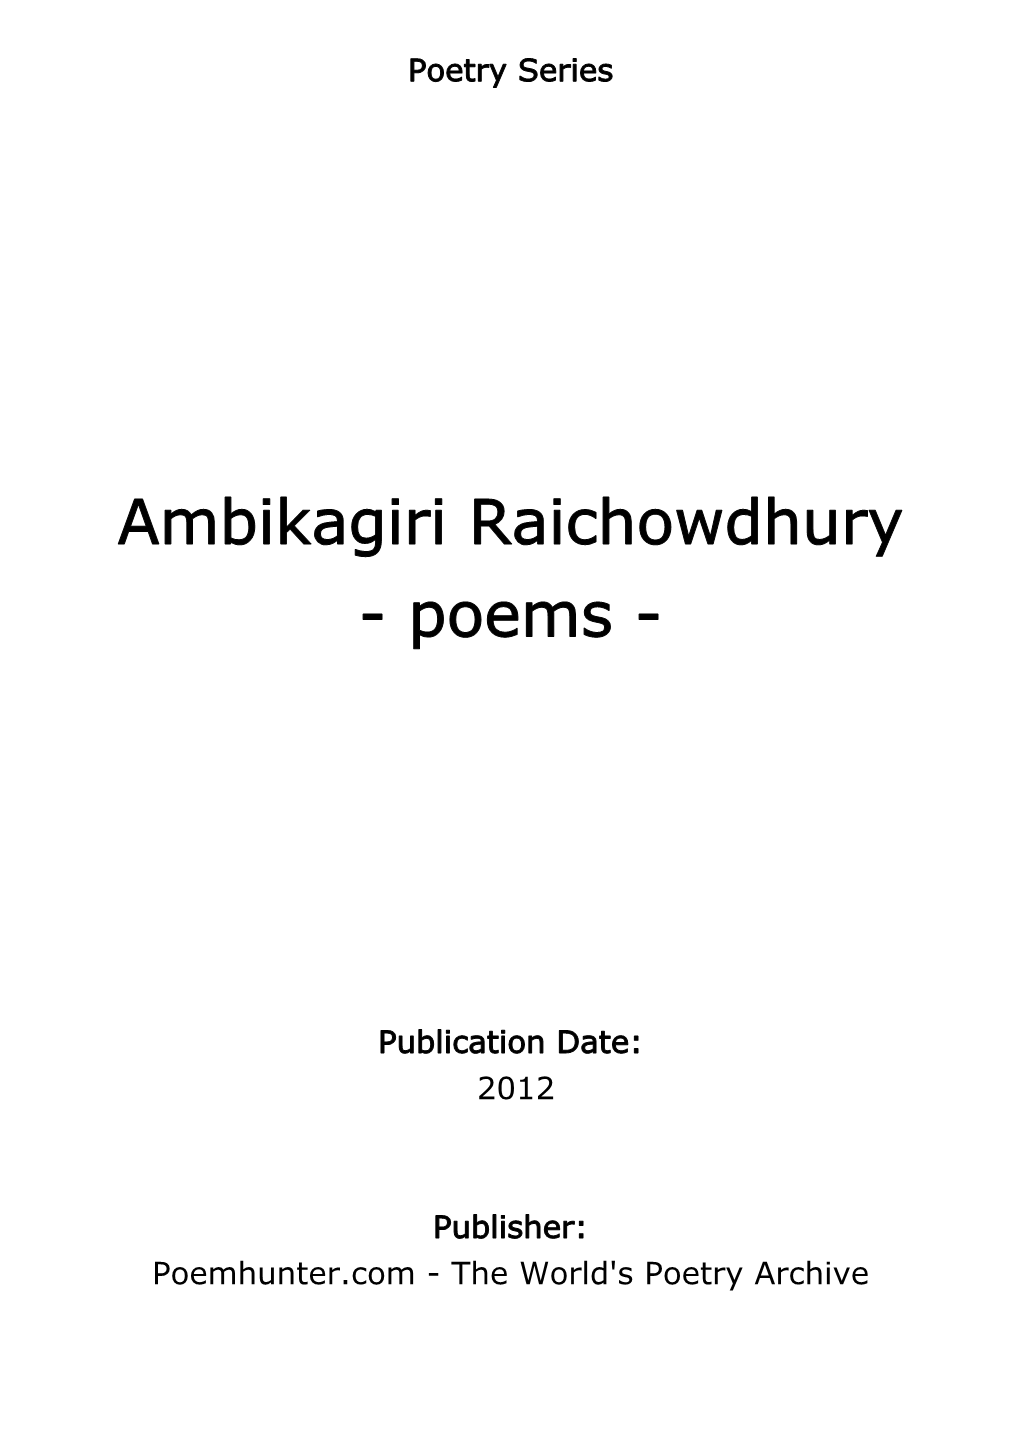 Ambikagiri Raichowdhury - Poems